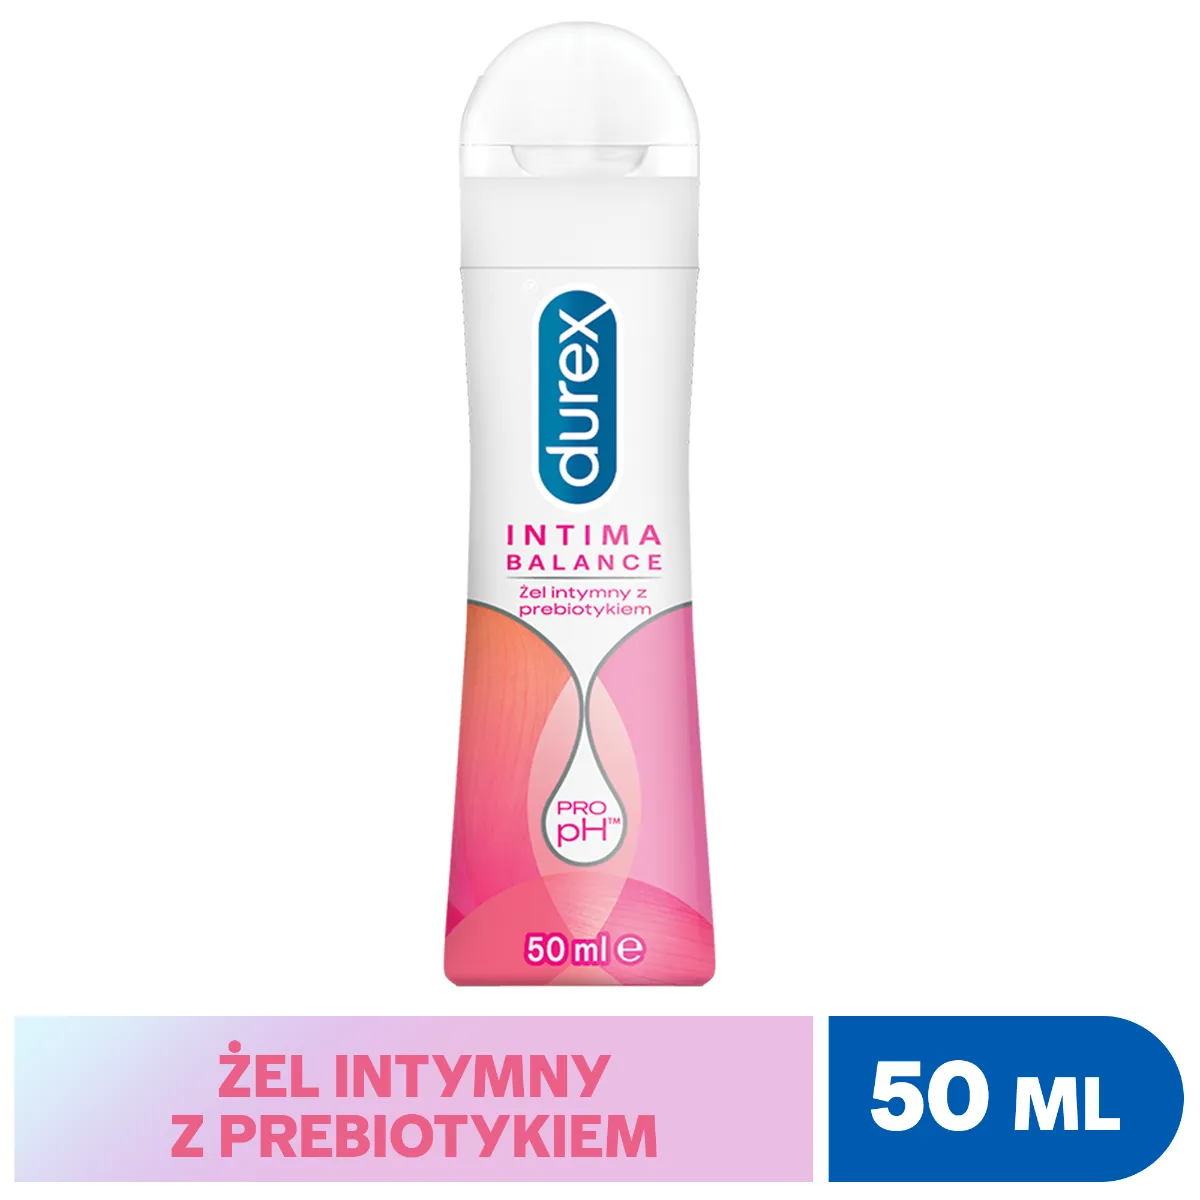 Durex Intima Balance, żel intymny z prebiotykiem, 50 ml